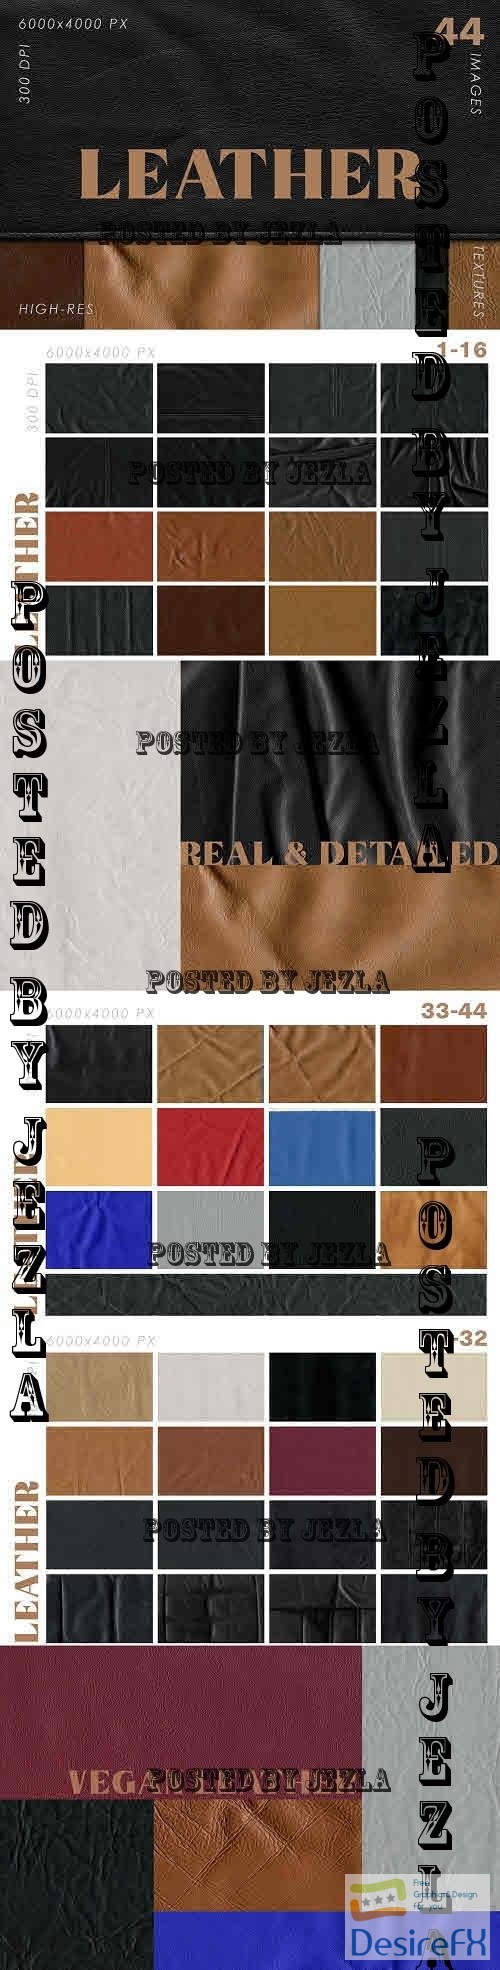 Natural & Vegan Leather Textures - 7427254